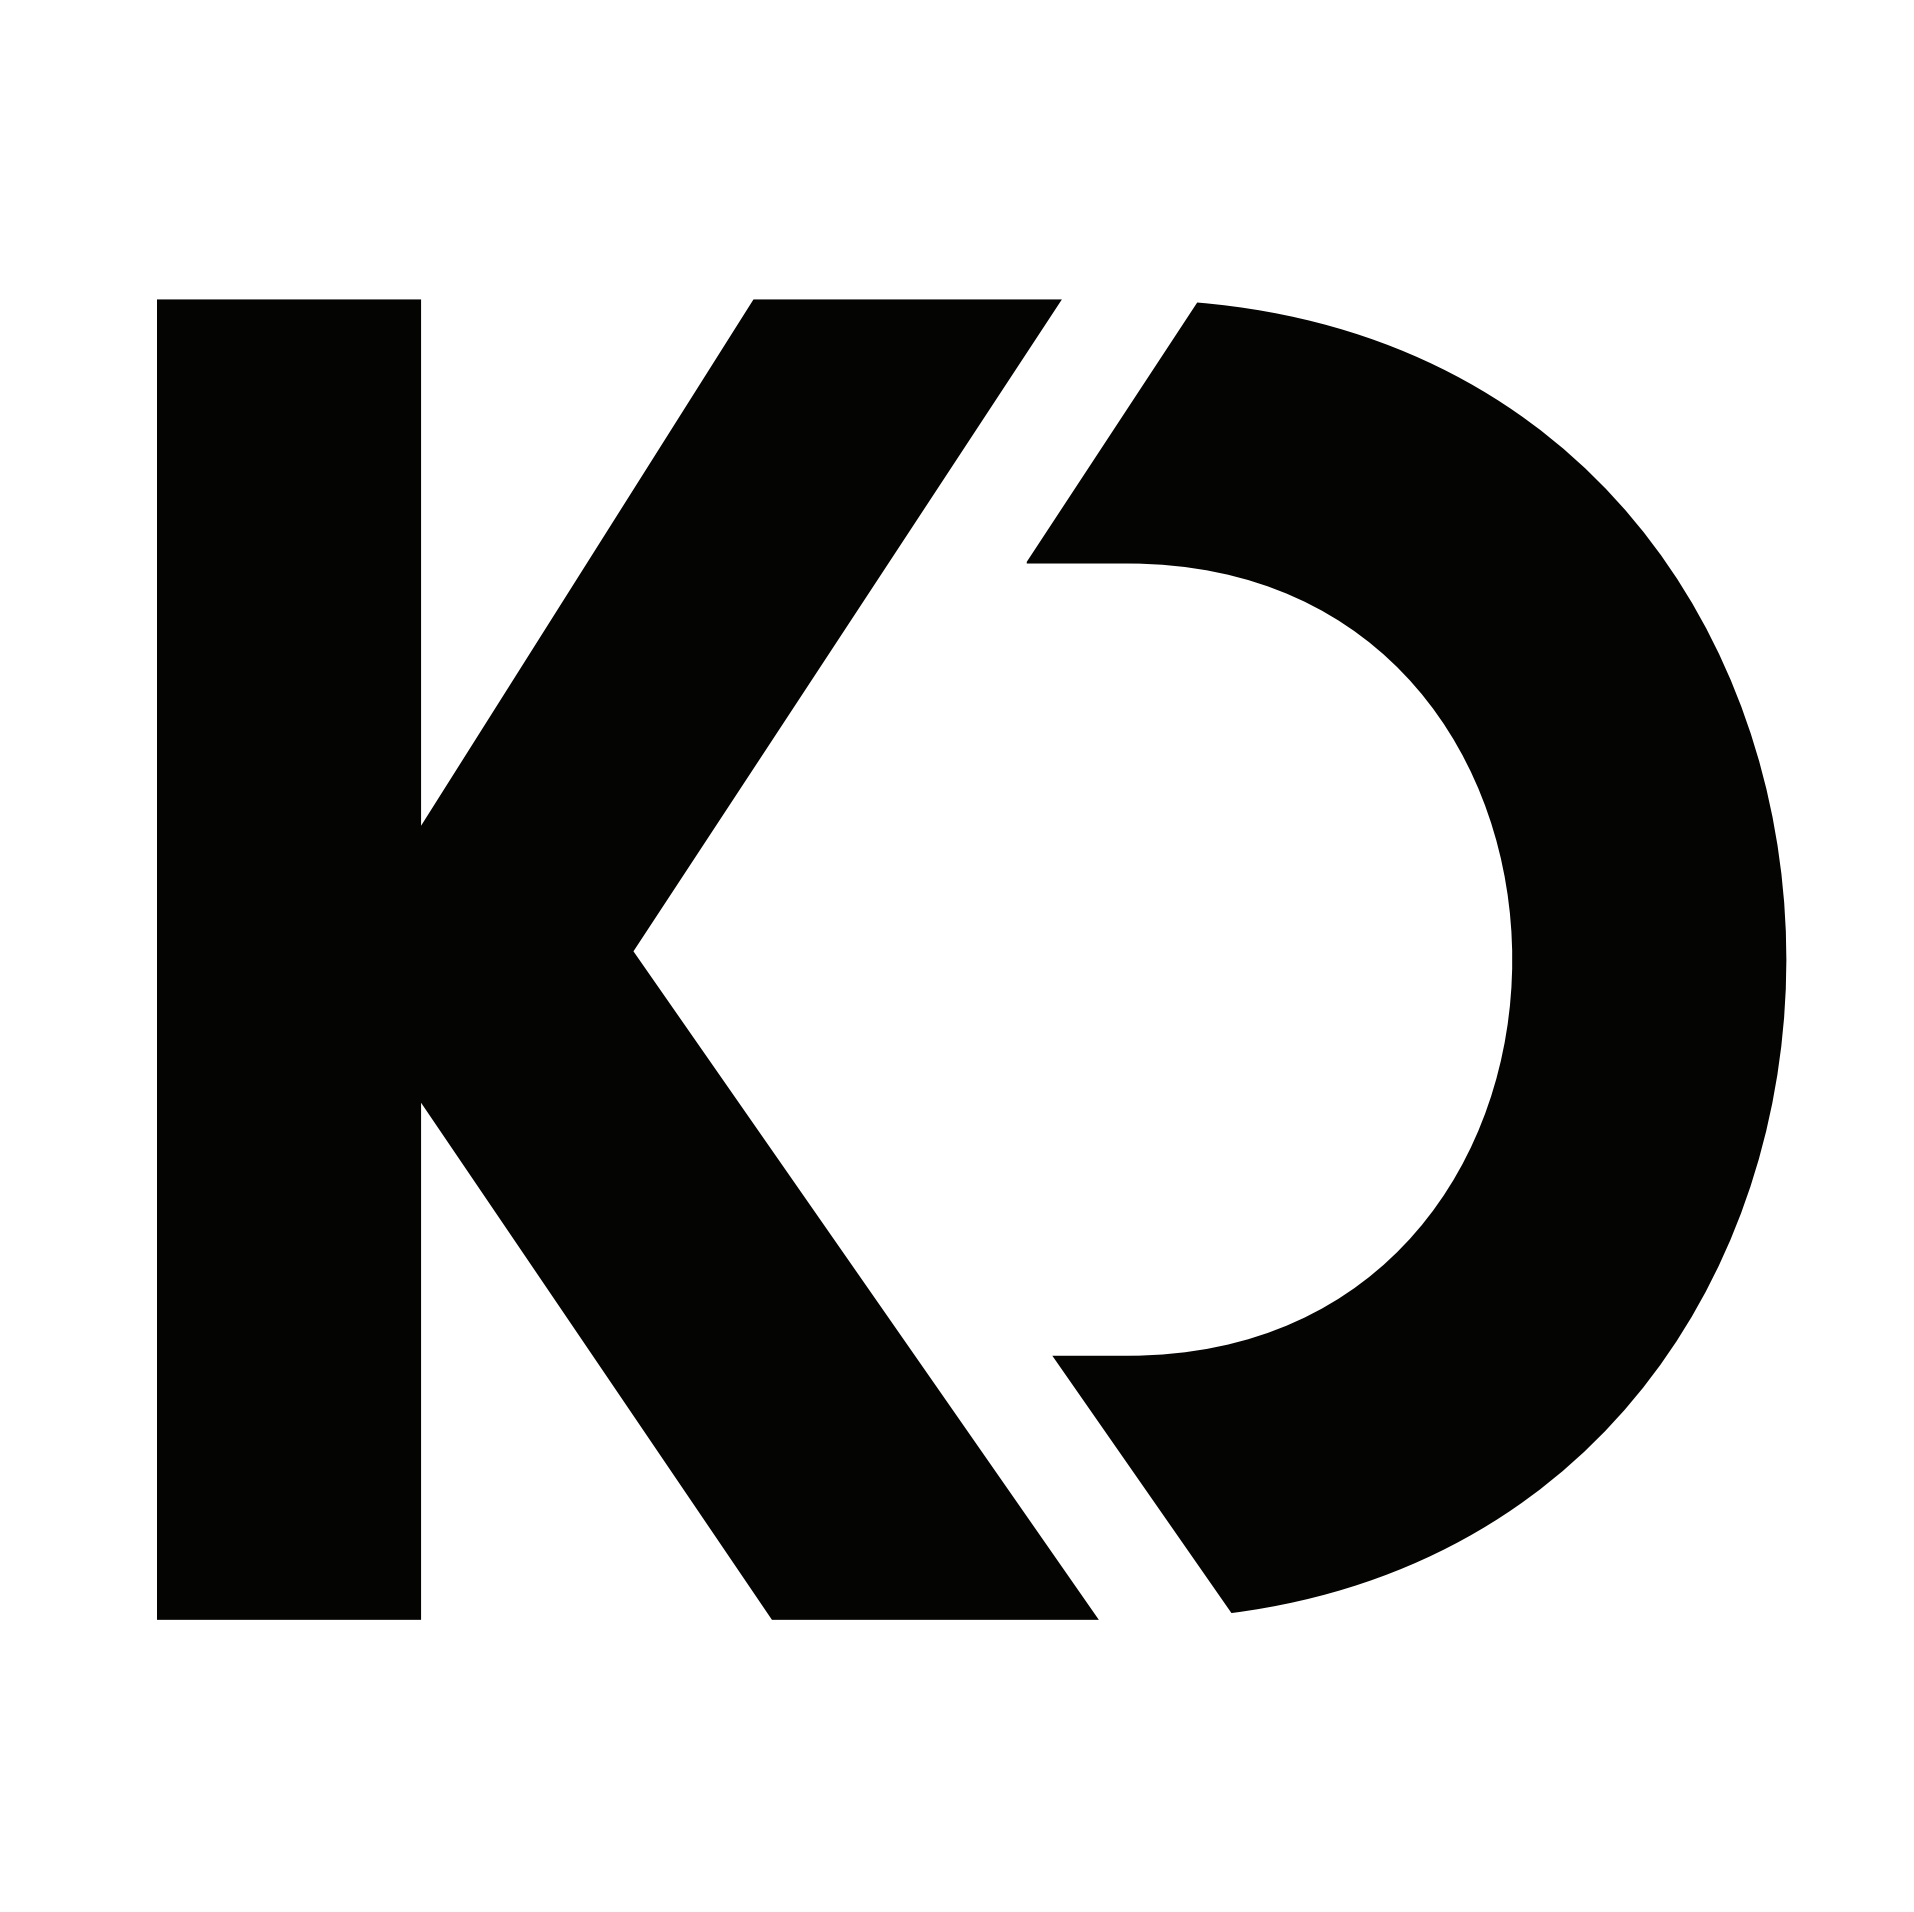 Kd Logos - 1+ Best Kd Logo Ideas. Free Kd Logo Maker. | 99designs